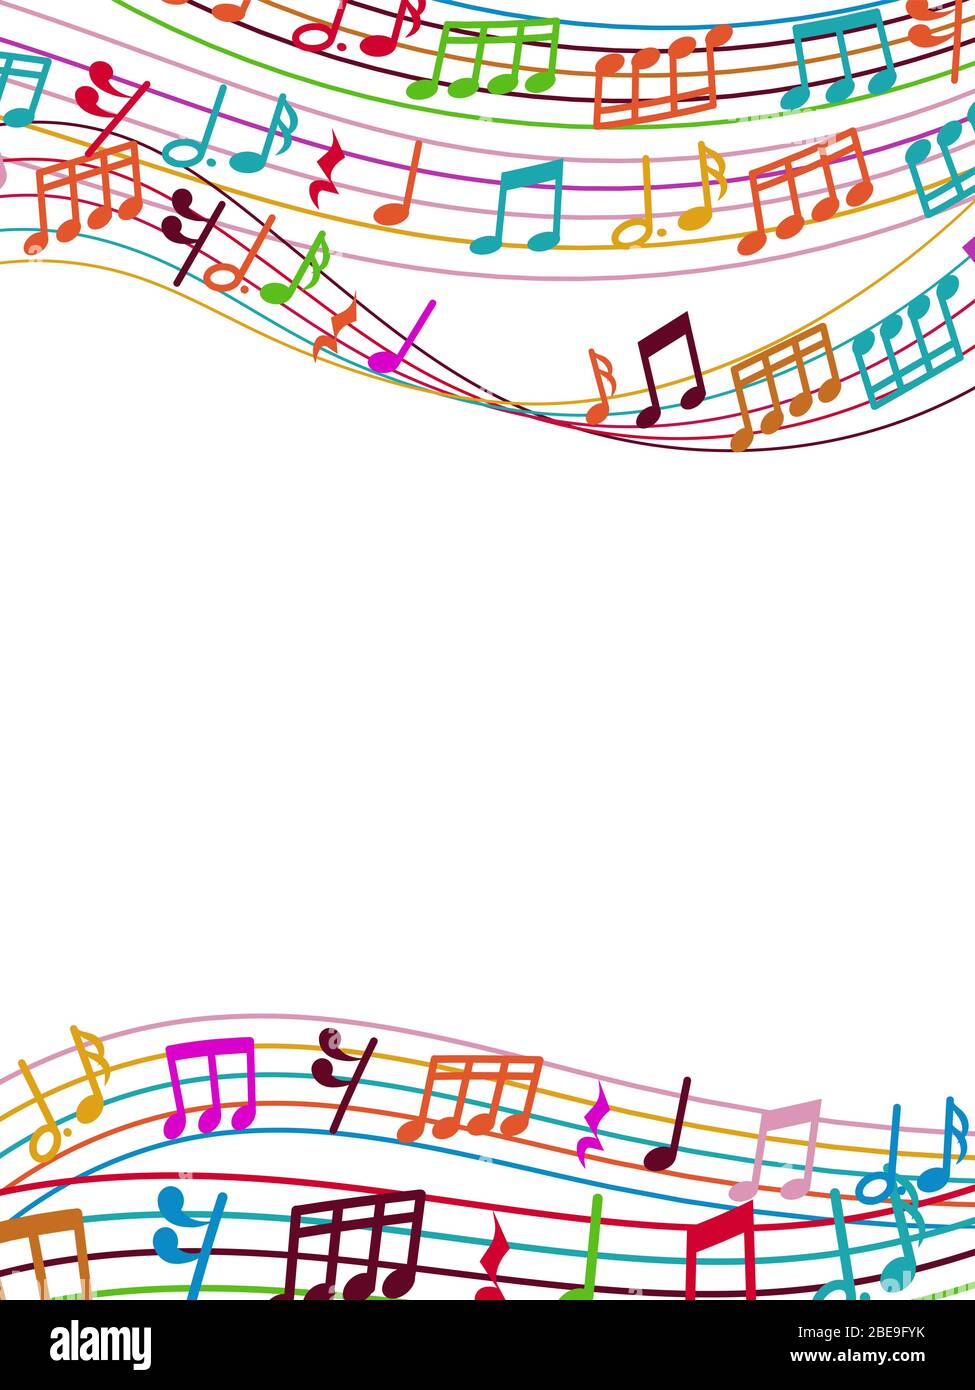 Musikalischer Hintergrund mit bunten Musiknoten und Wellen. Vektorgrafik Stock Vektor